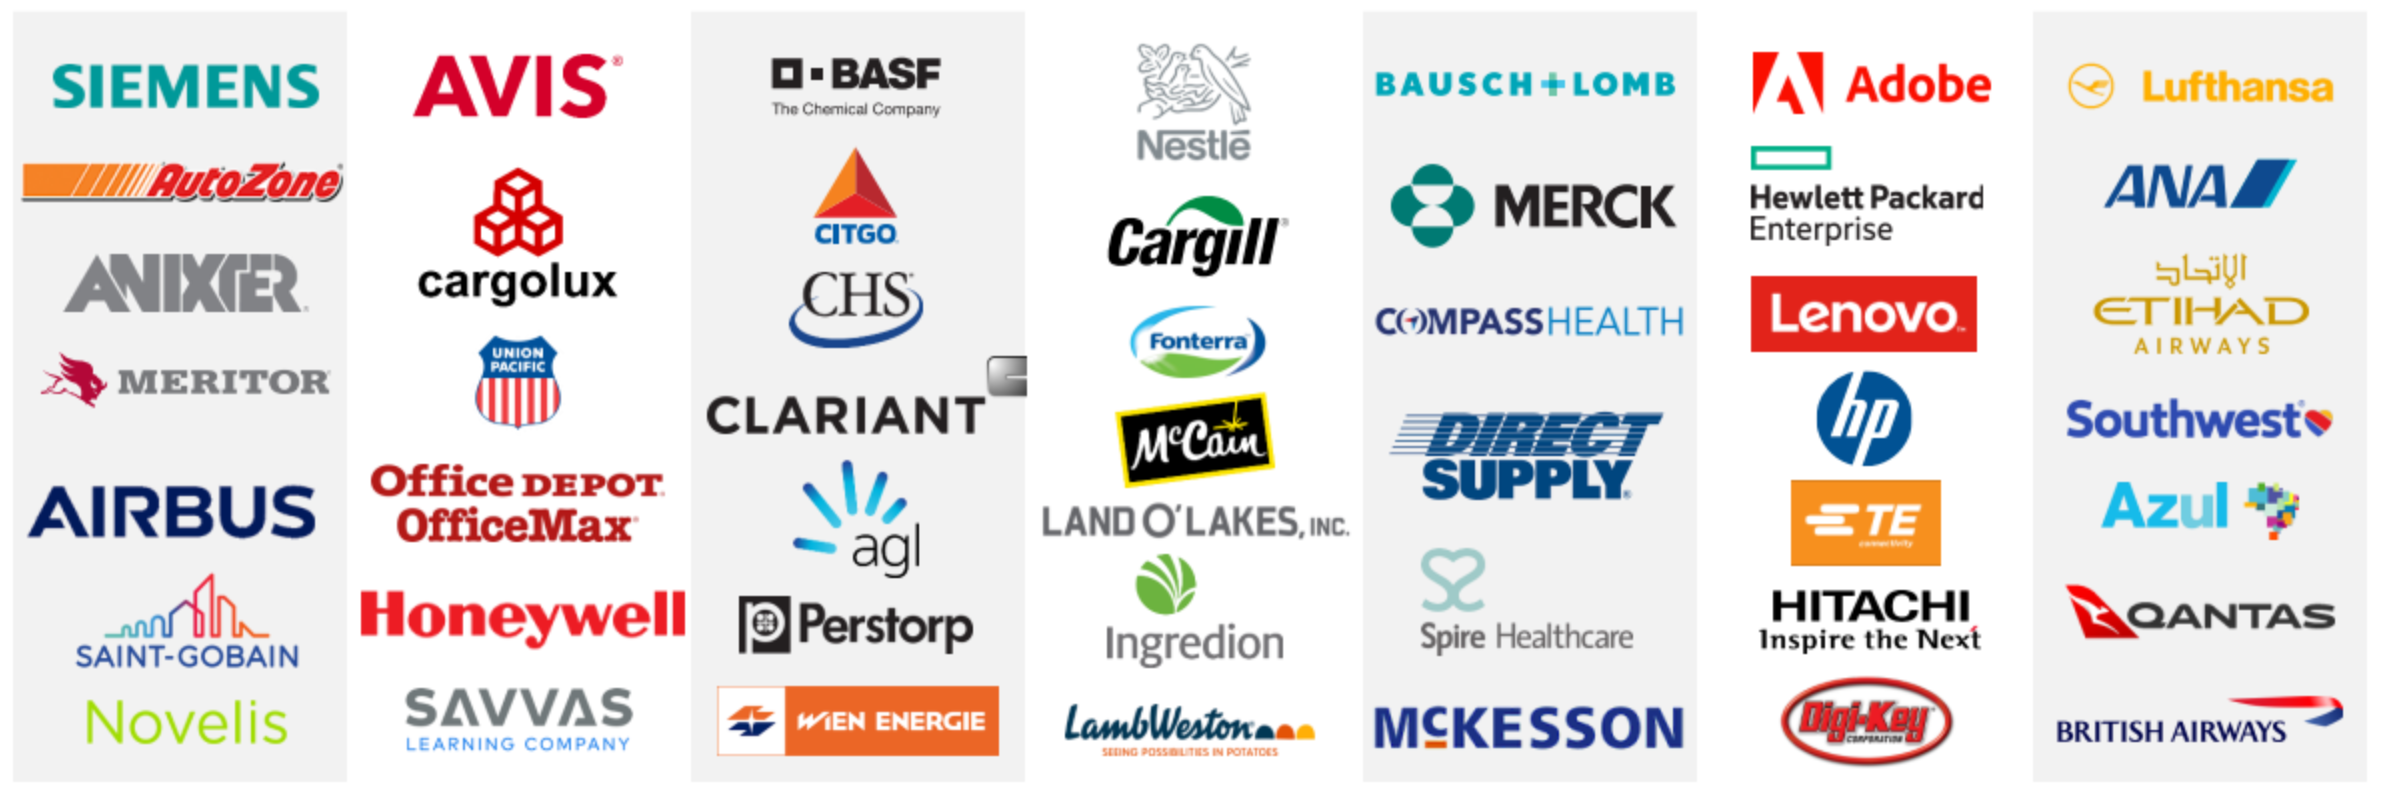 Логотипы клиентов компании. Источник: презентация PROS, слайд 13